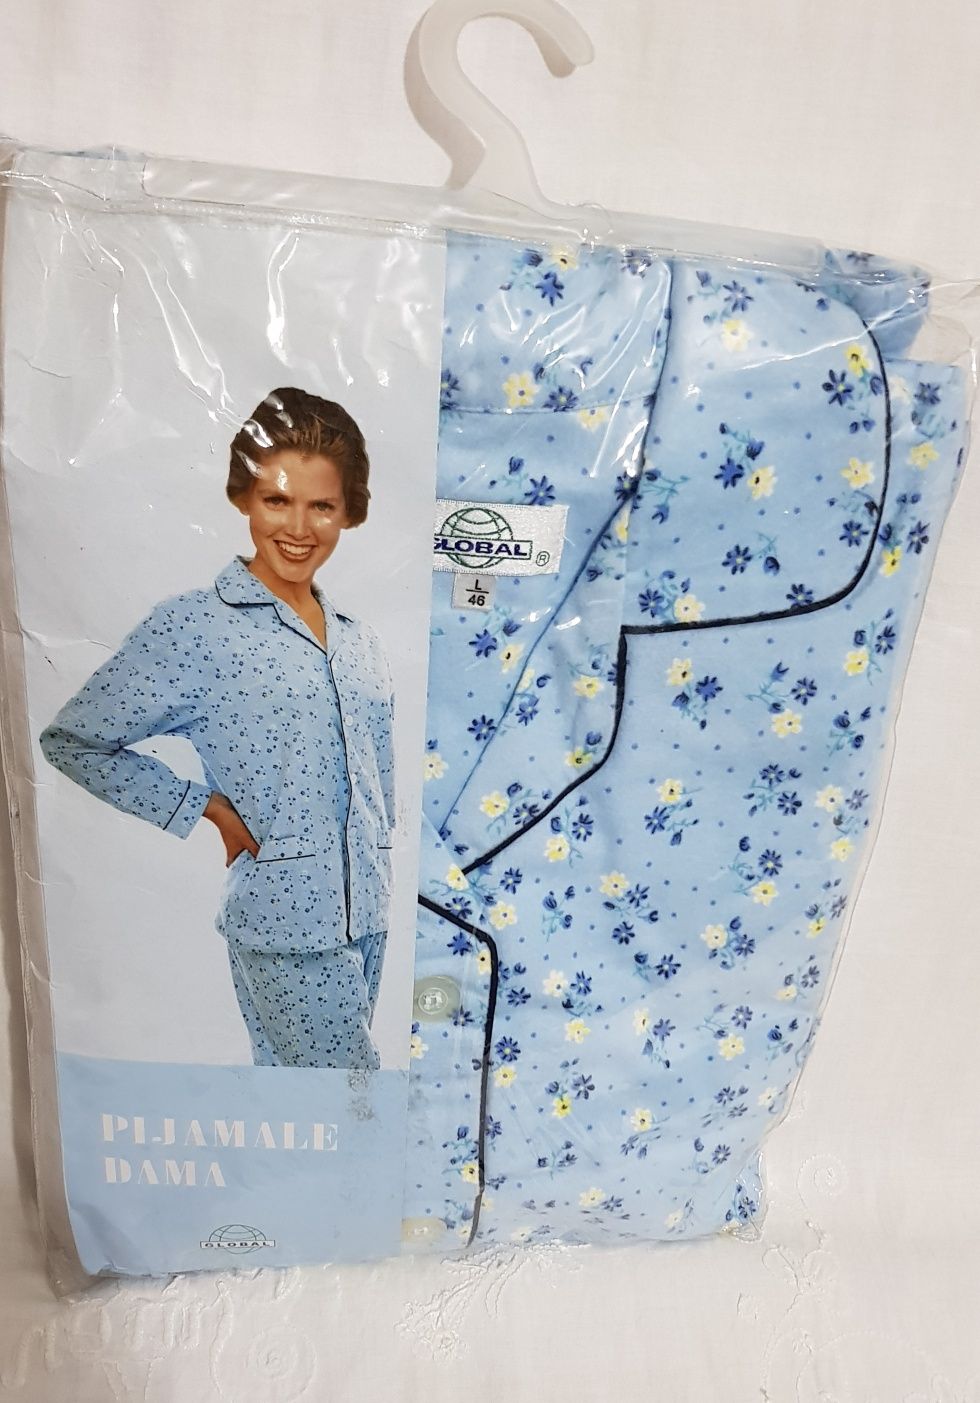 Pijamale dama bbc